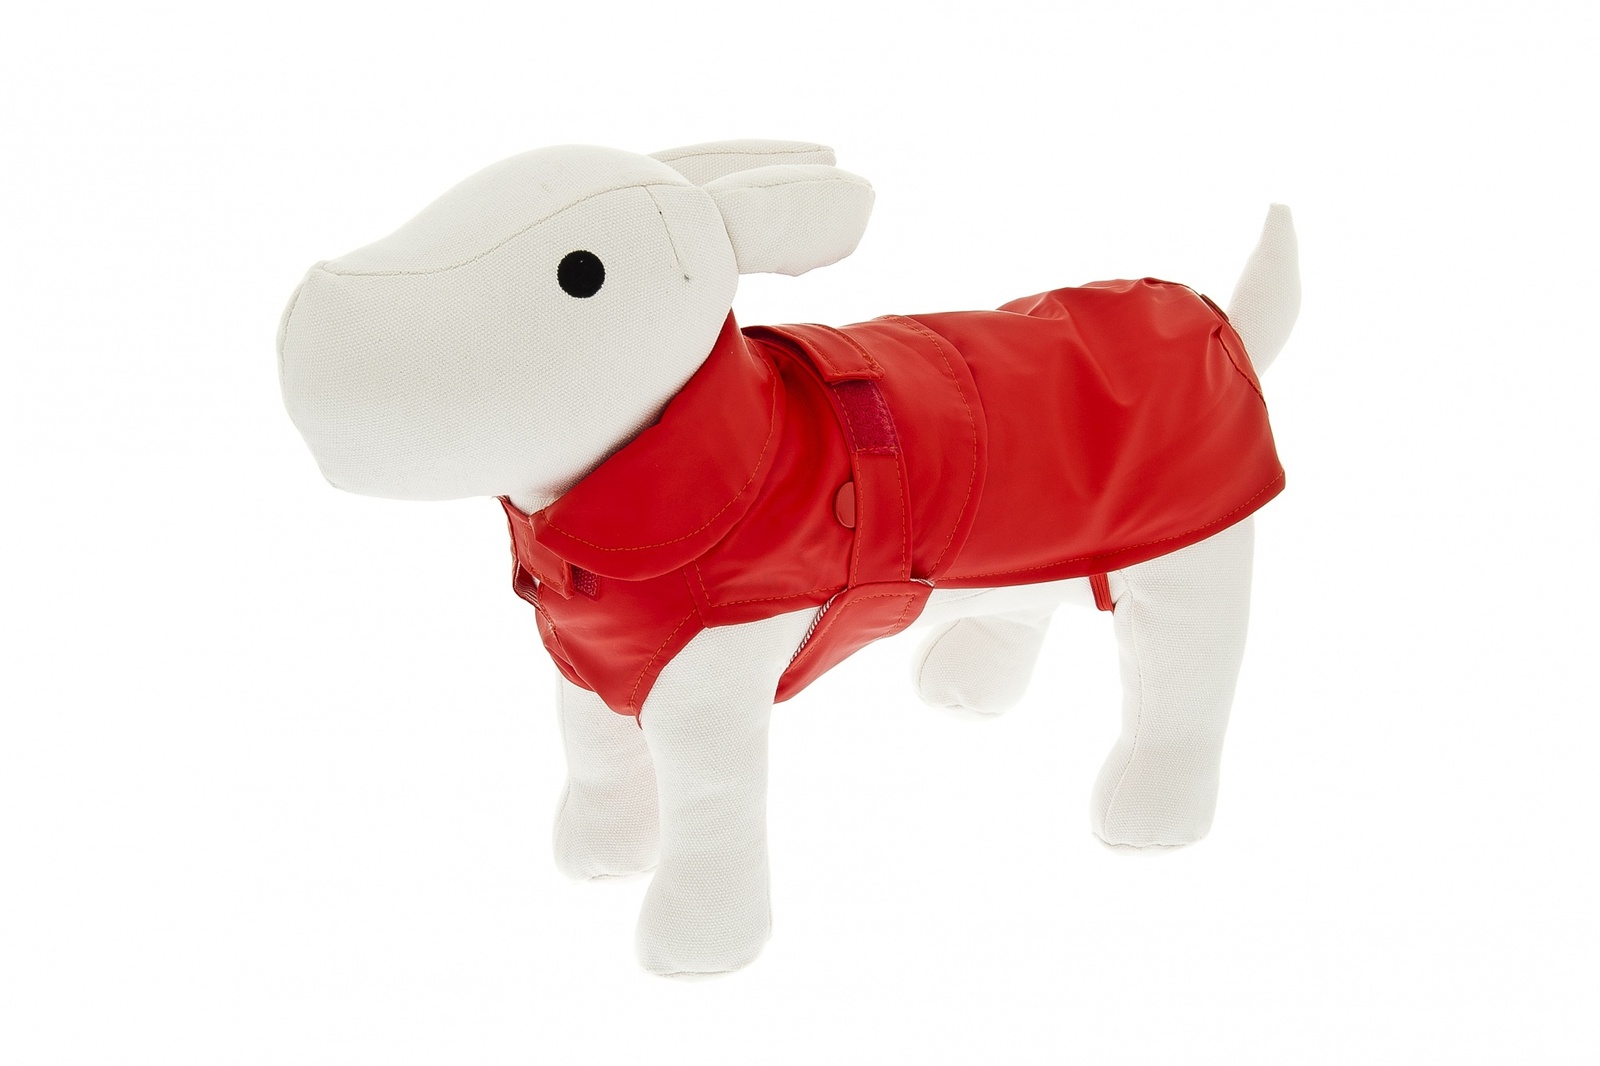 Ferribiella одежда Ferribiella одежда утепленный плащ-дождевик со съемным подкладом Классика, красный (24 см)